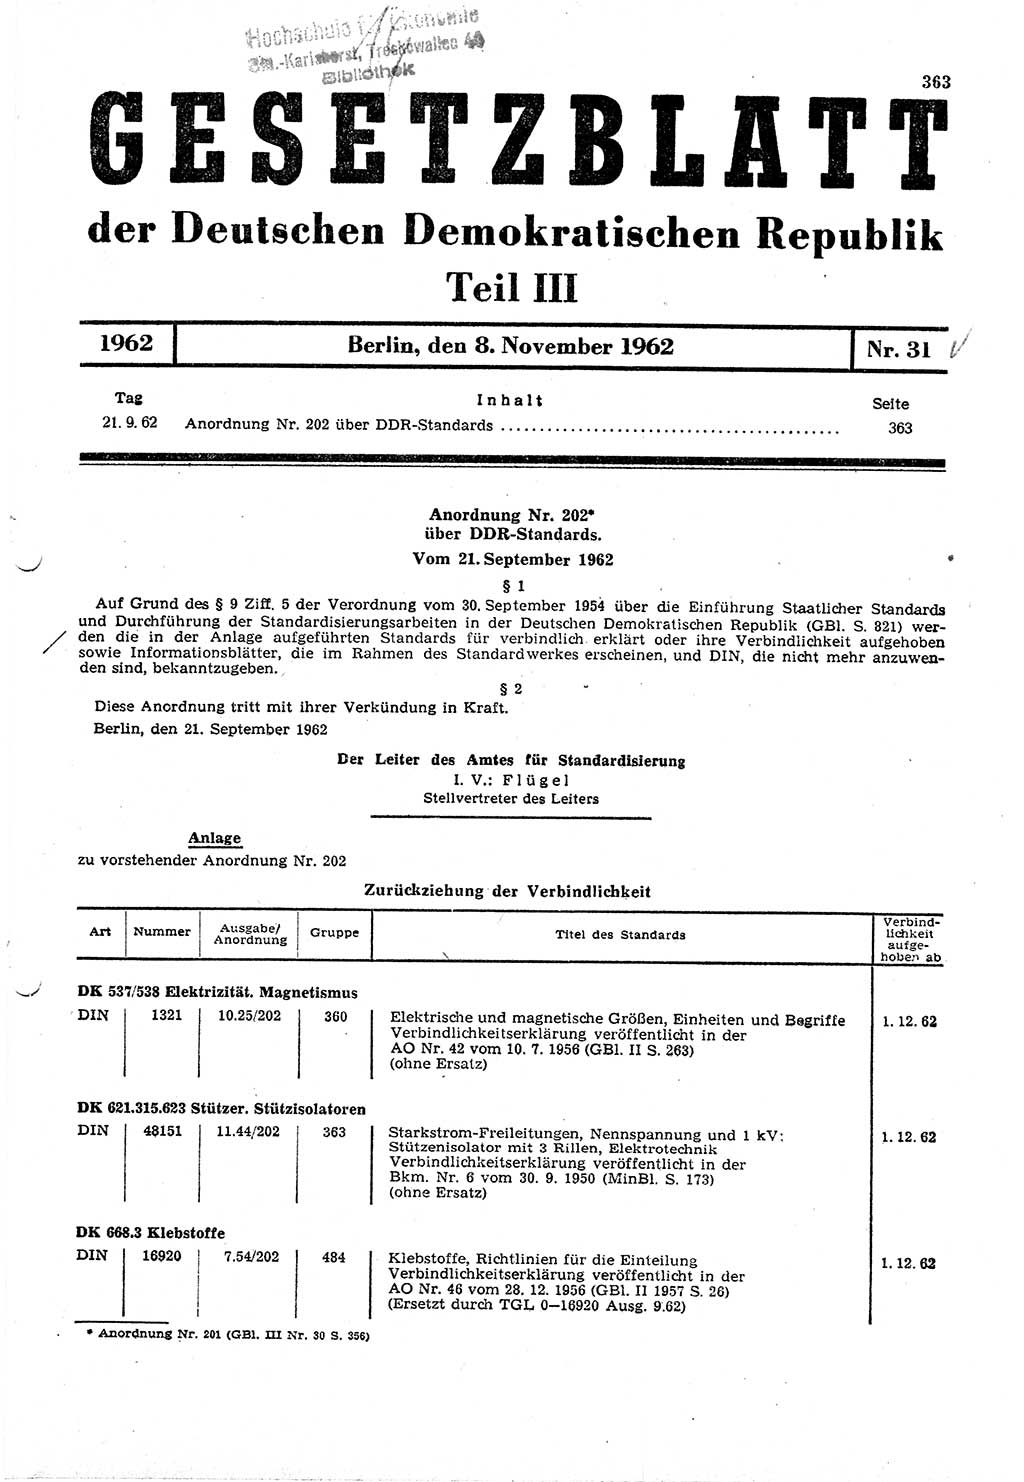 Gesetzblatt (GBl.) der Deutschen Demokratischen Republik (DDR) Teil ⅠⅠⅠ 1962, Seite 363 (GBl. DDR ⅠⅠⅠ 1962, S. 363)